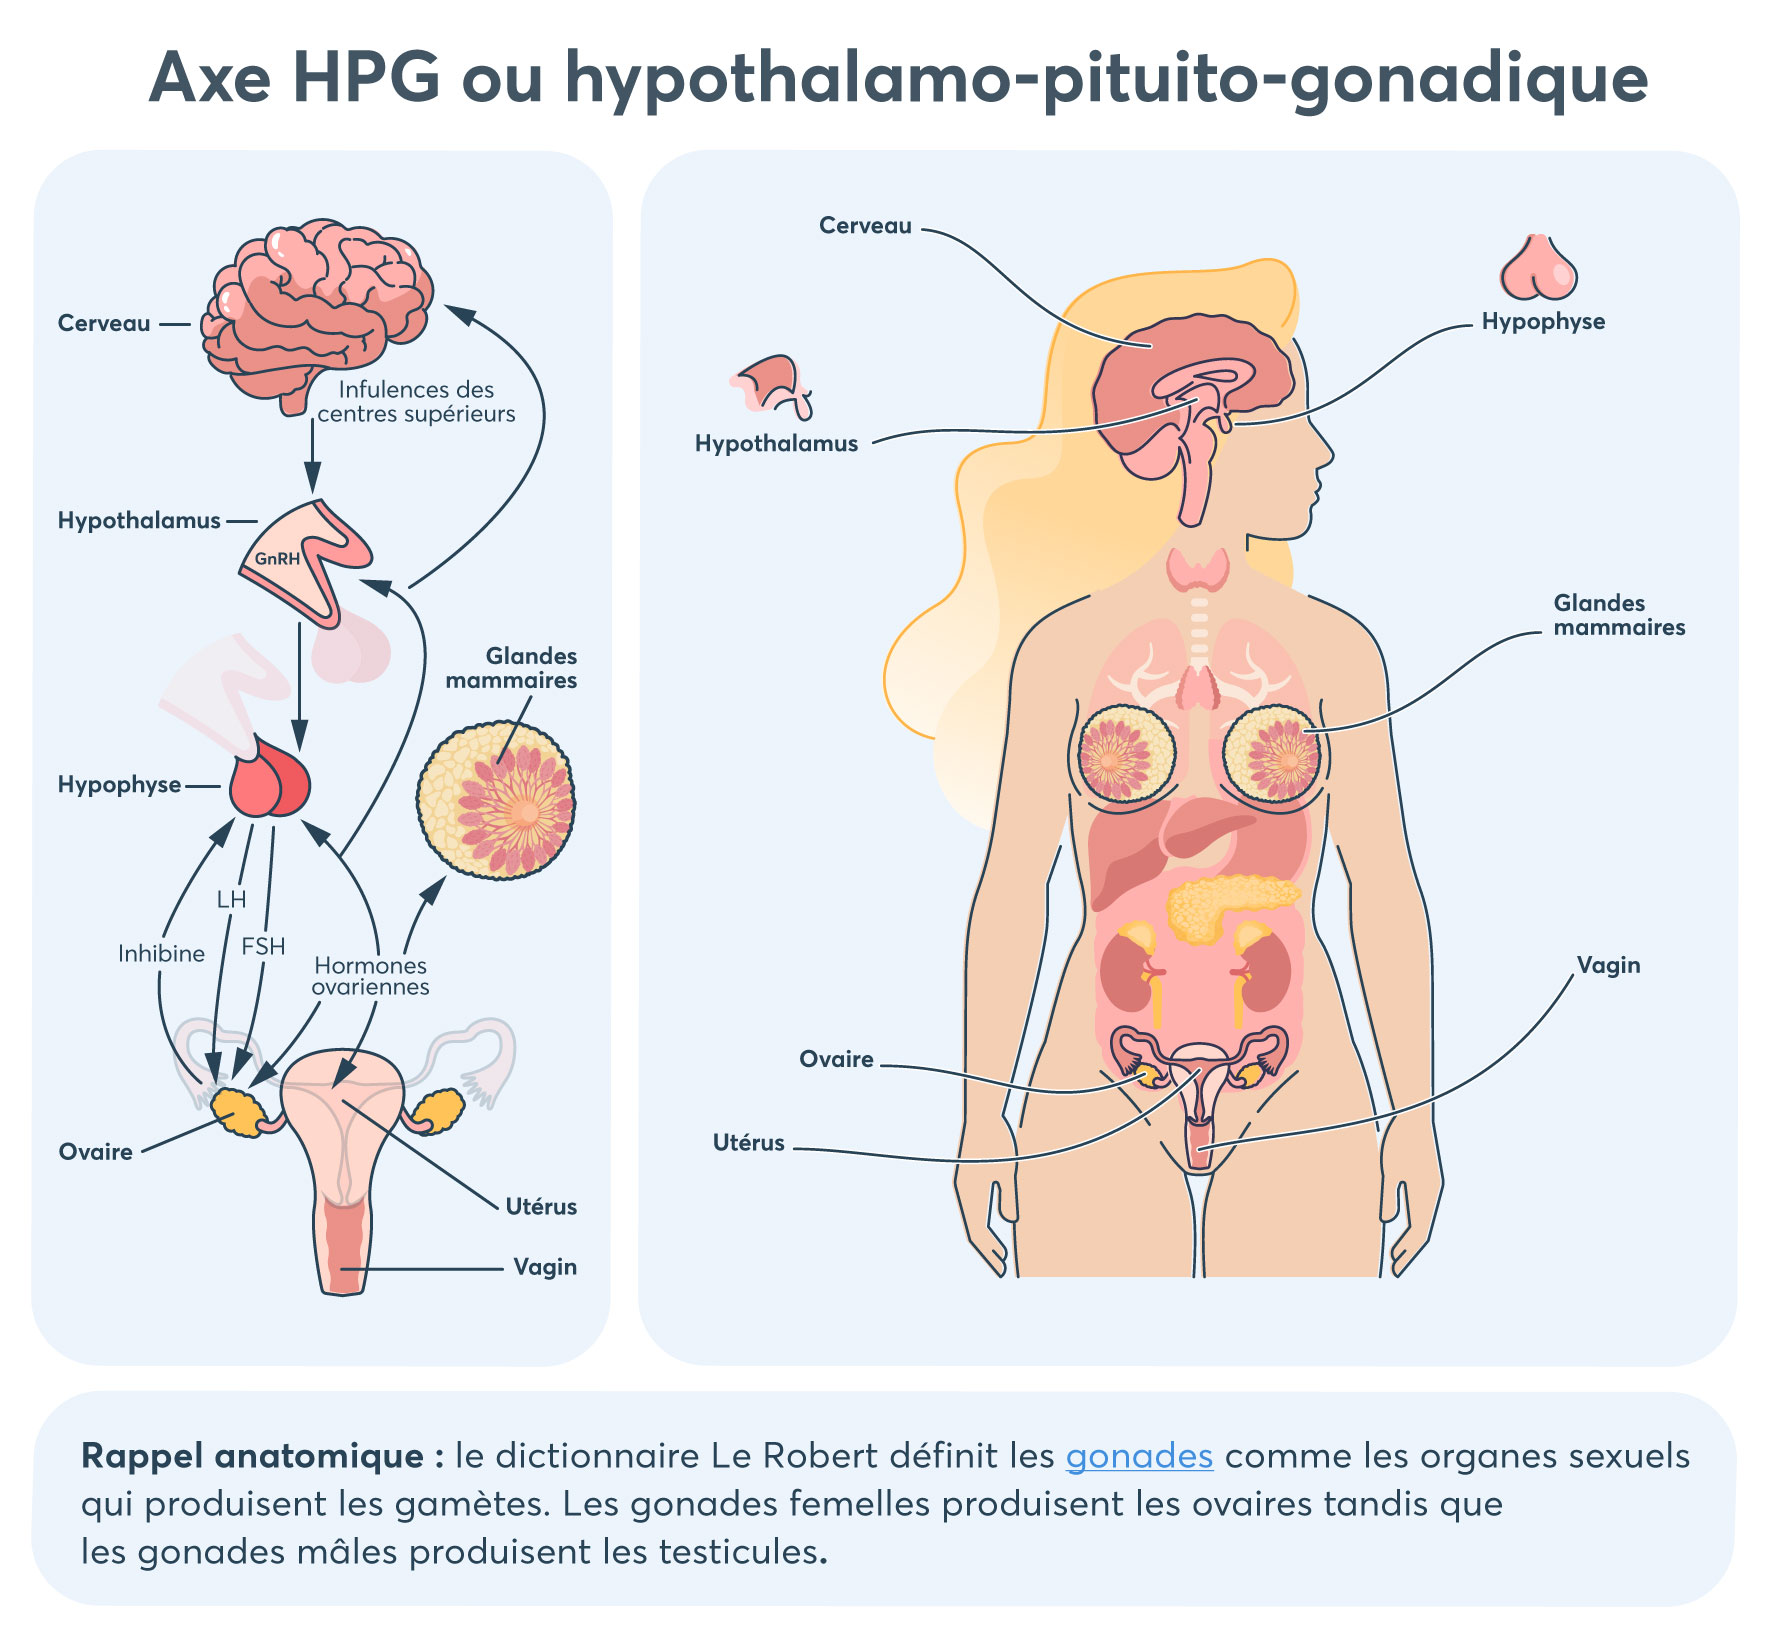 Schéma de l’axe HPG ou hypothalamo-pituito-gonadique